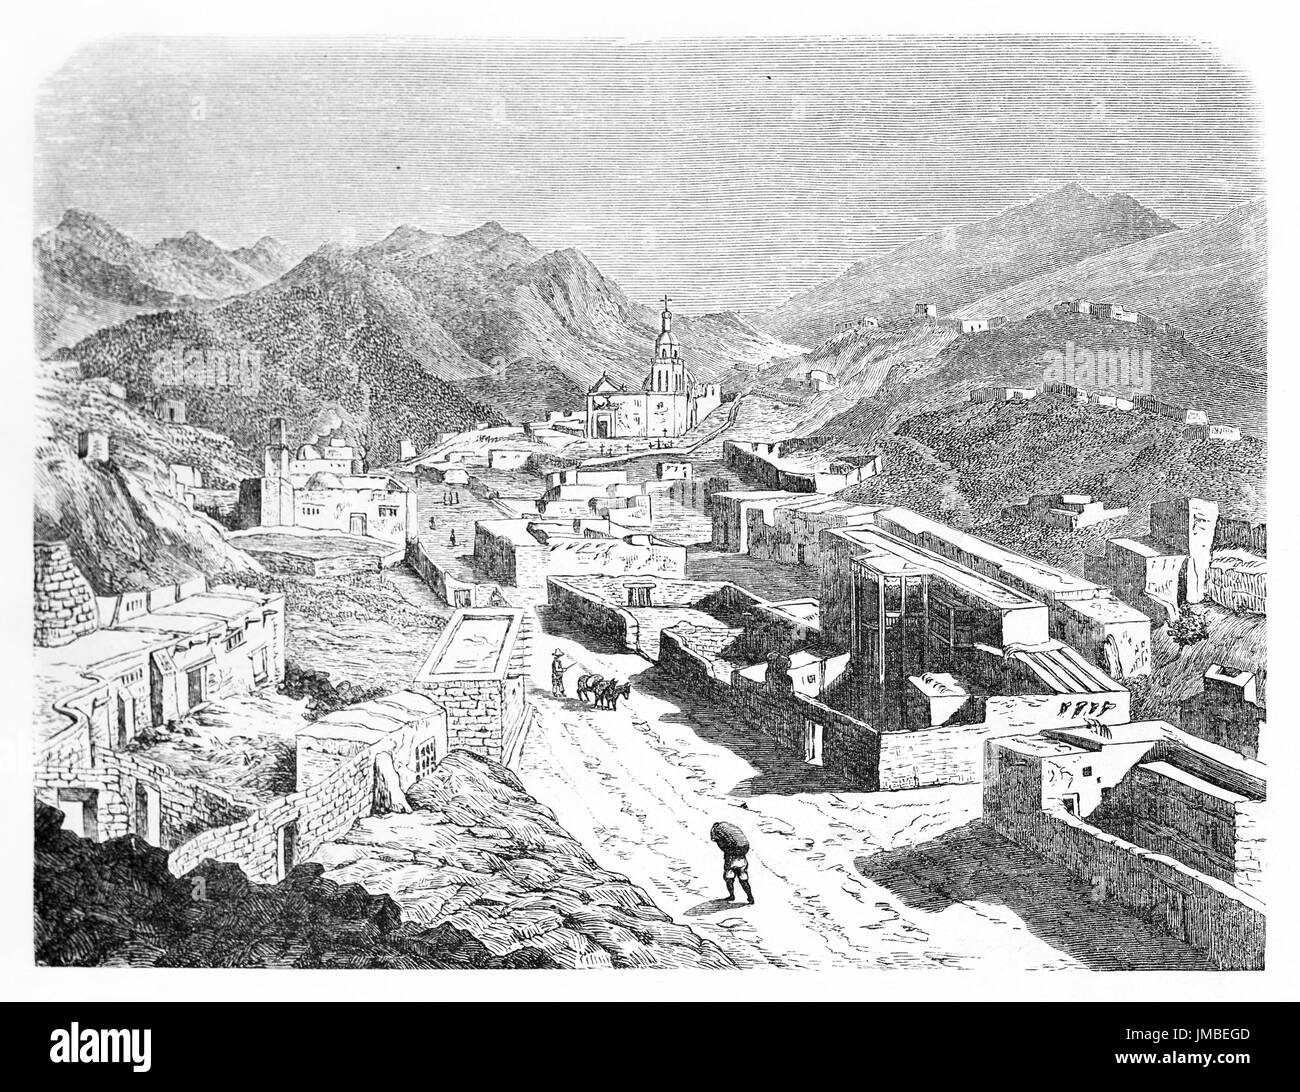 Blick von oben auf die steinerne Stadt, die sich in einer Berglandschaft erhebt, mit einer Kirche weit in der Ferne. Santa Eulalia, Bundesstaat Chihuahua, Mexiko. Nicht identifizierter Autor 1861 Stockfoto